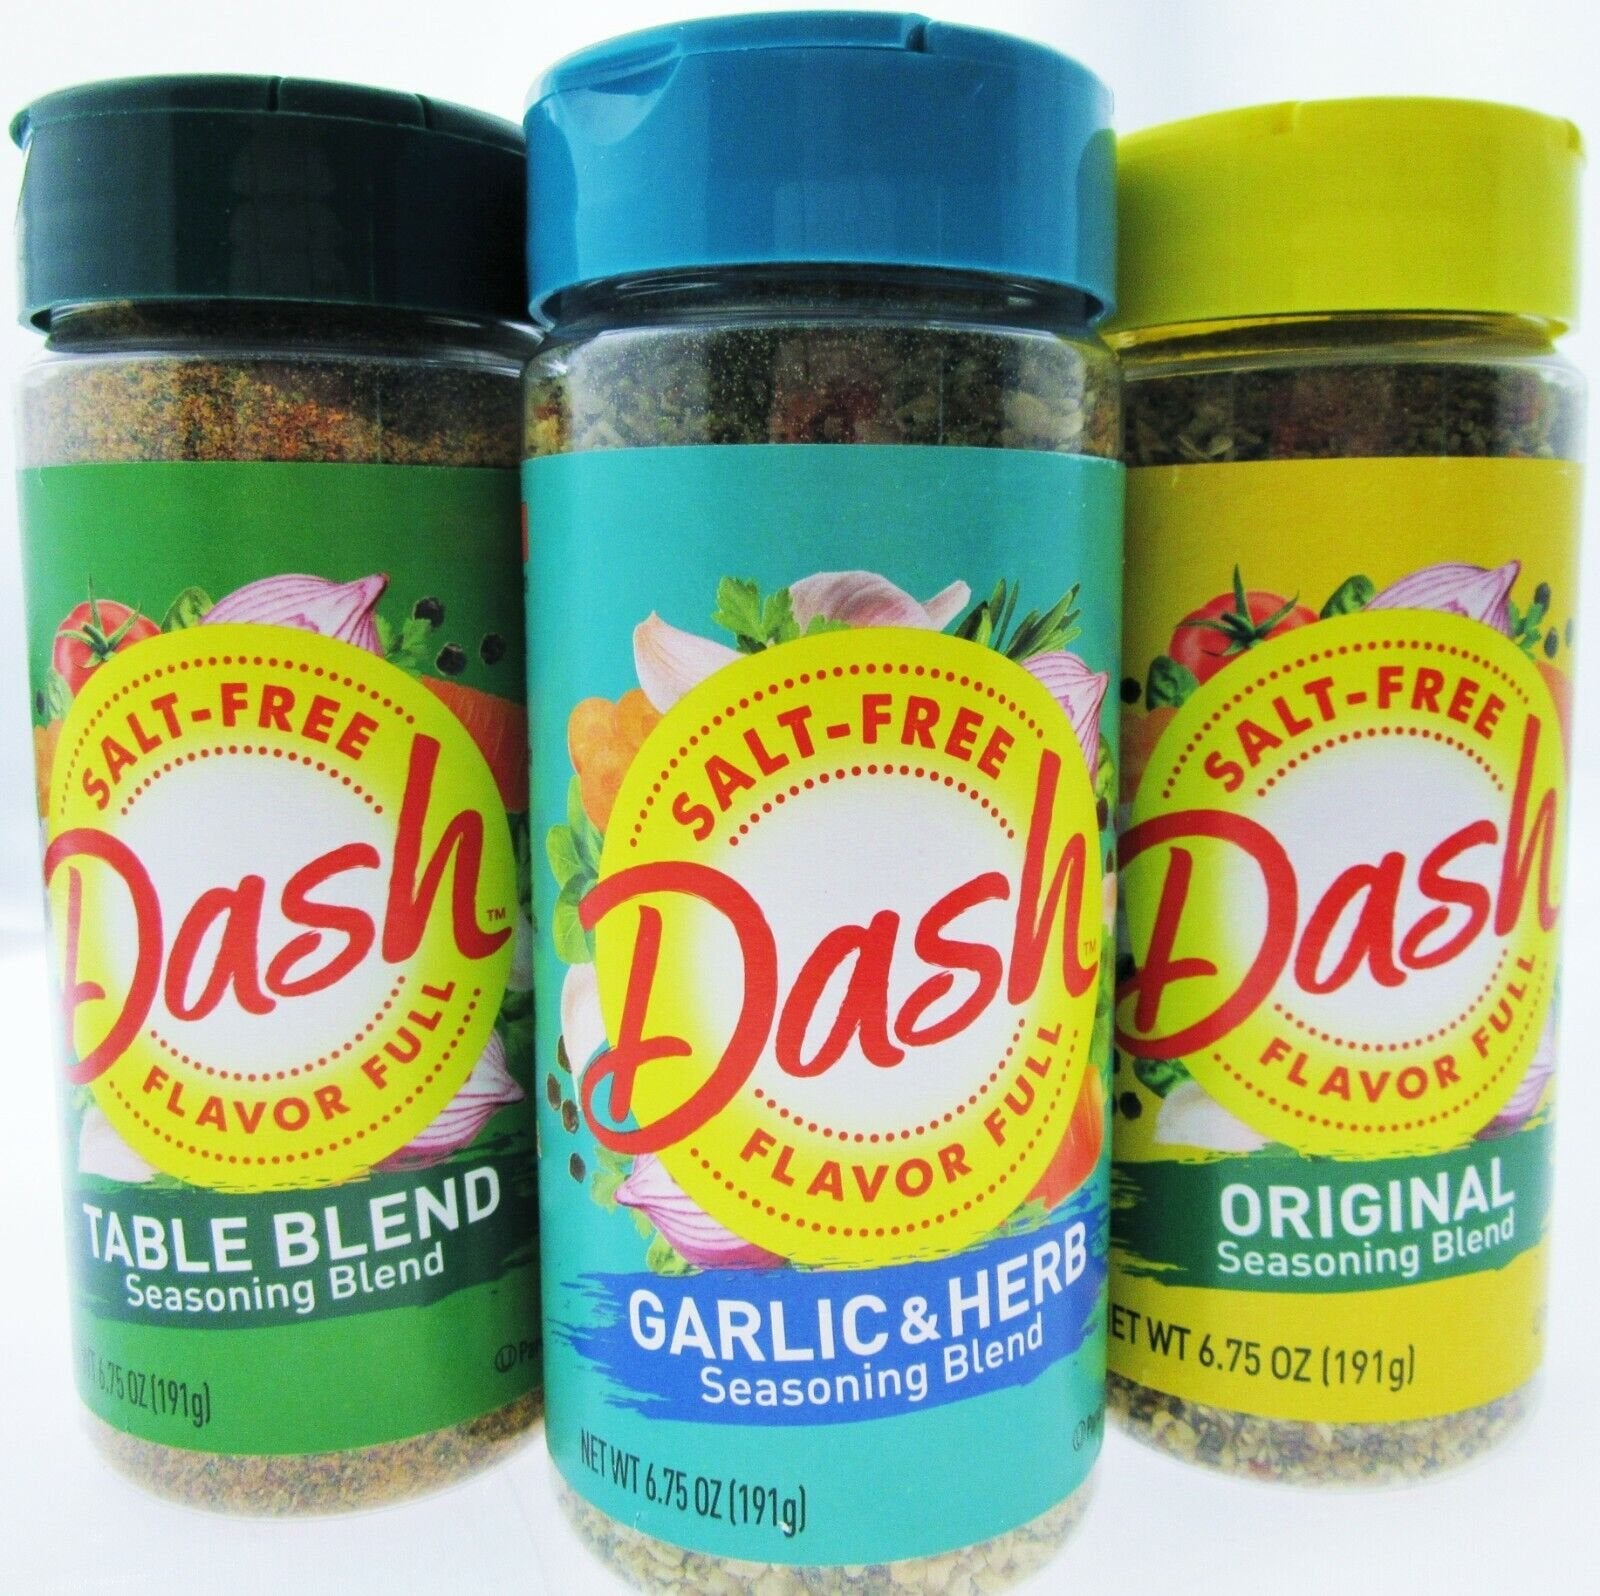 Mrs. Dash Garlic & Herb Seasoning Blend (Pack of 6)